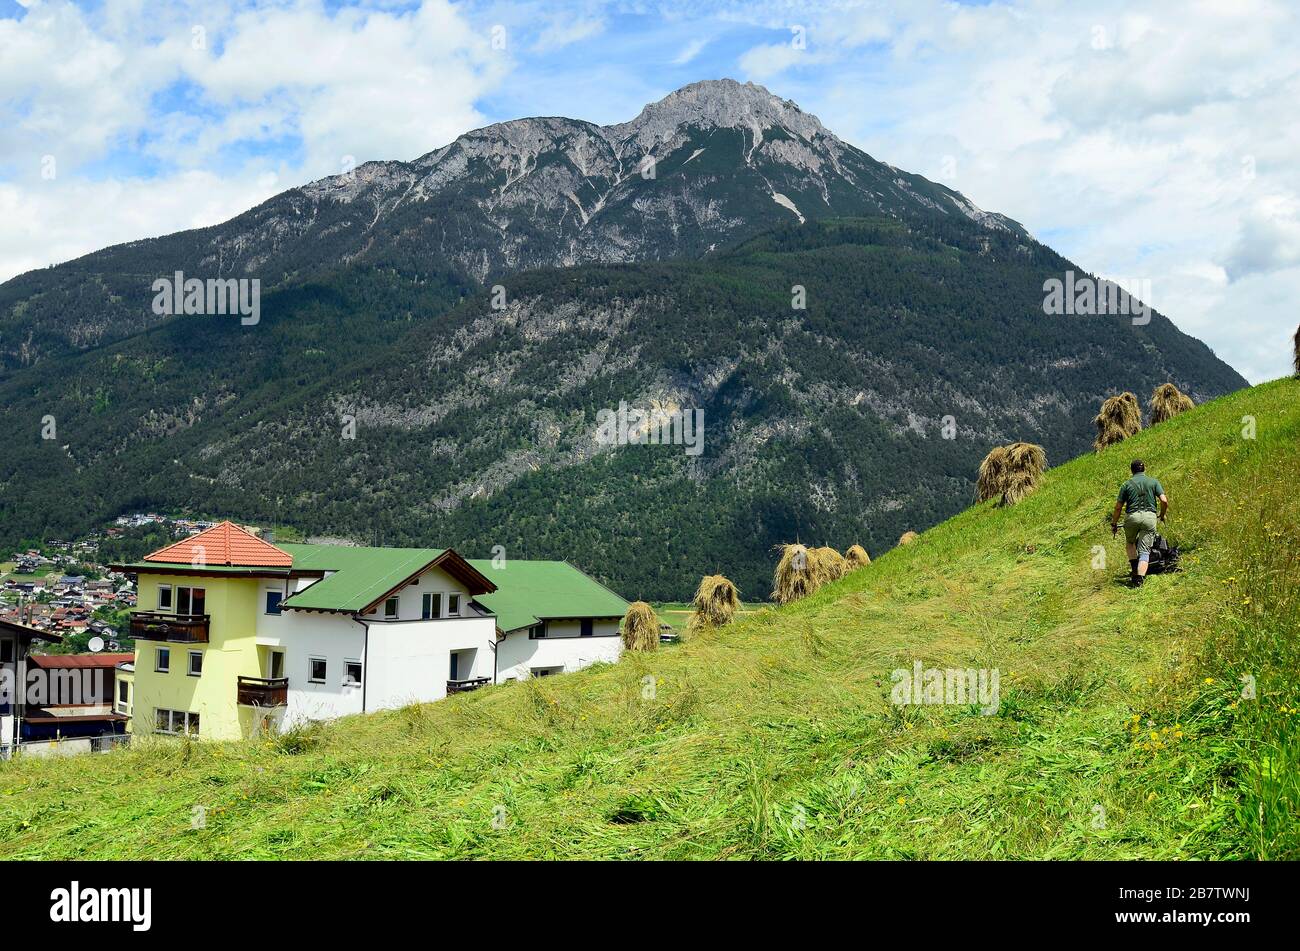 Austria, Tirolo, agricoltore non identificato mediante raccolta manuale del fieno Foto Stock